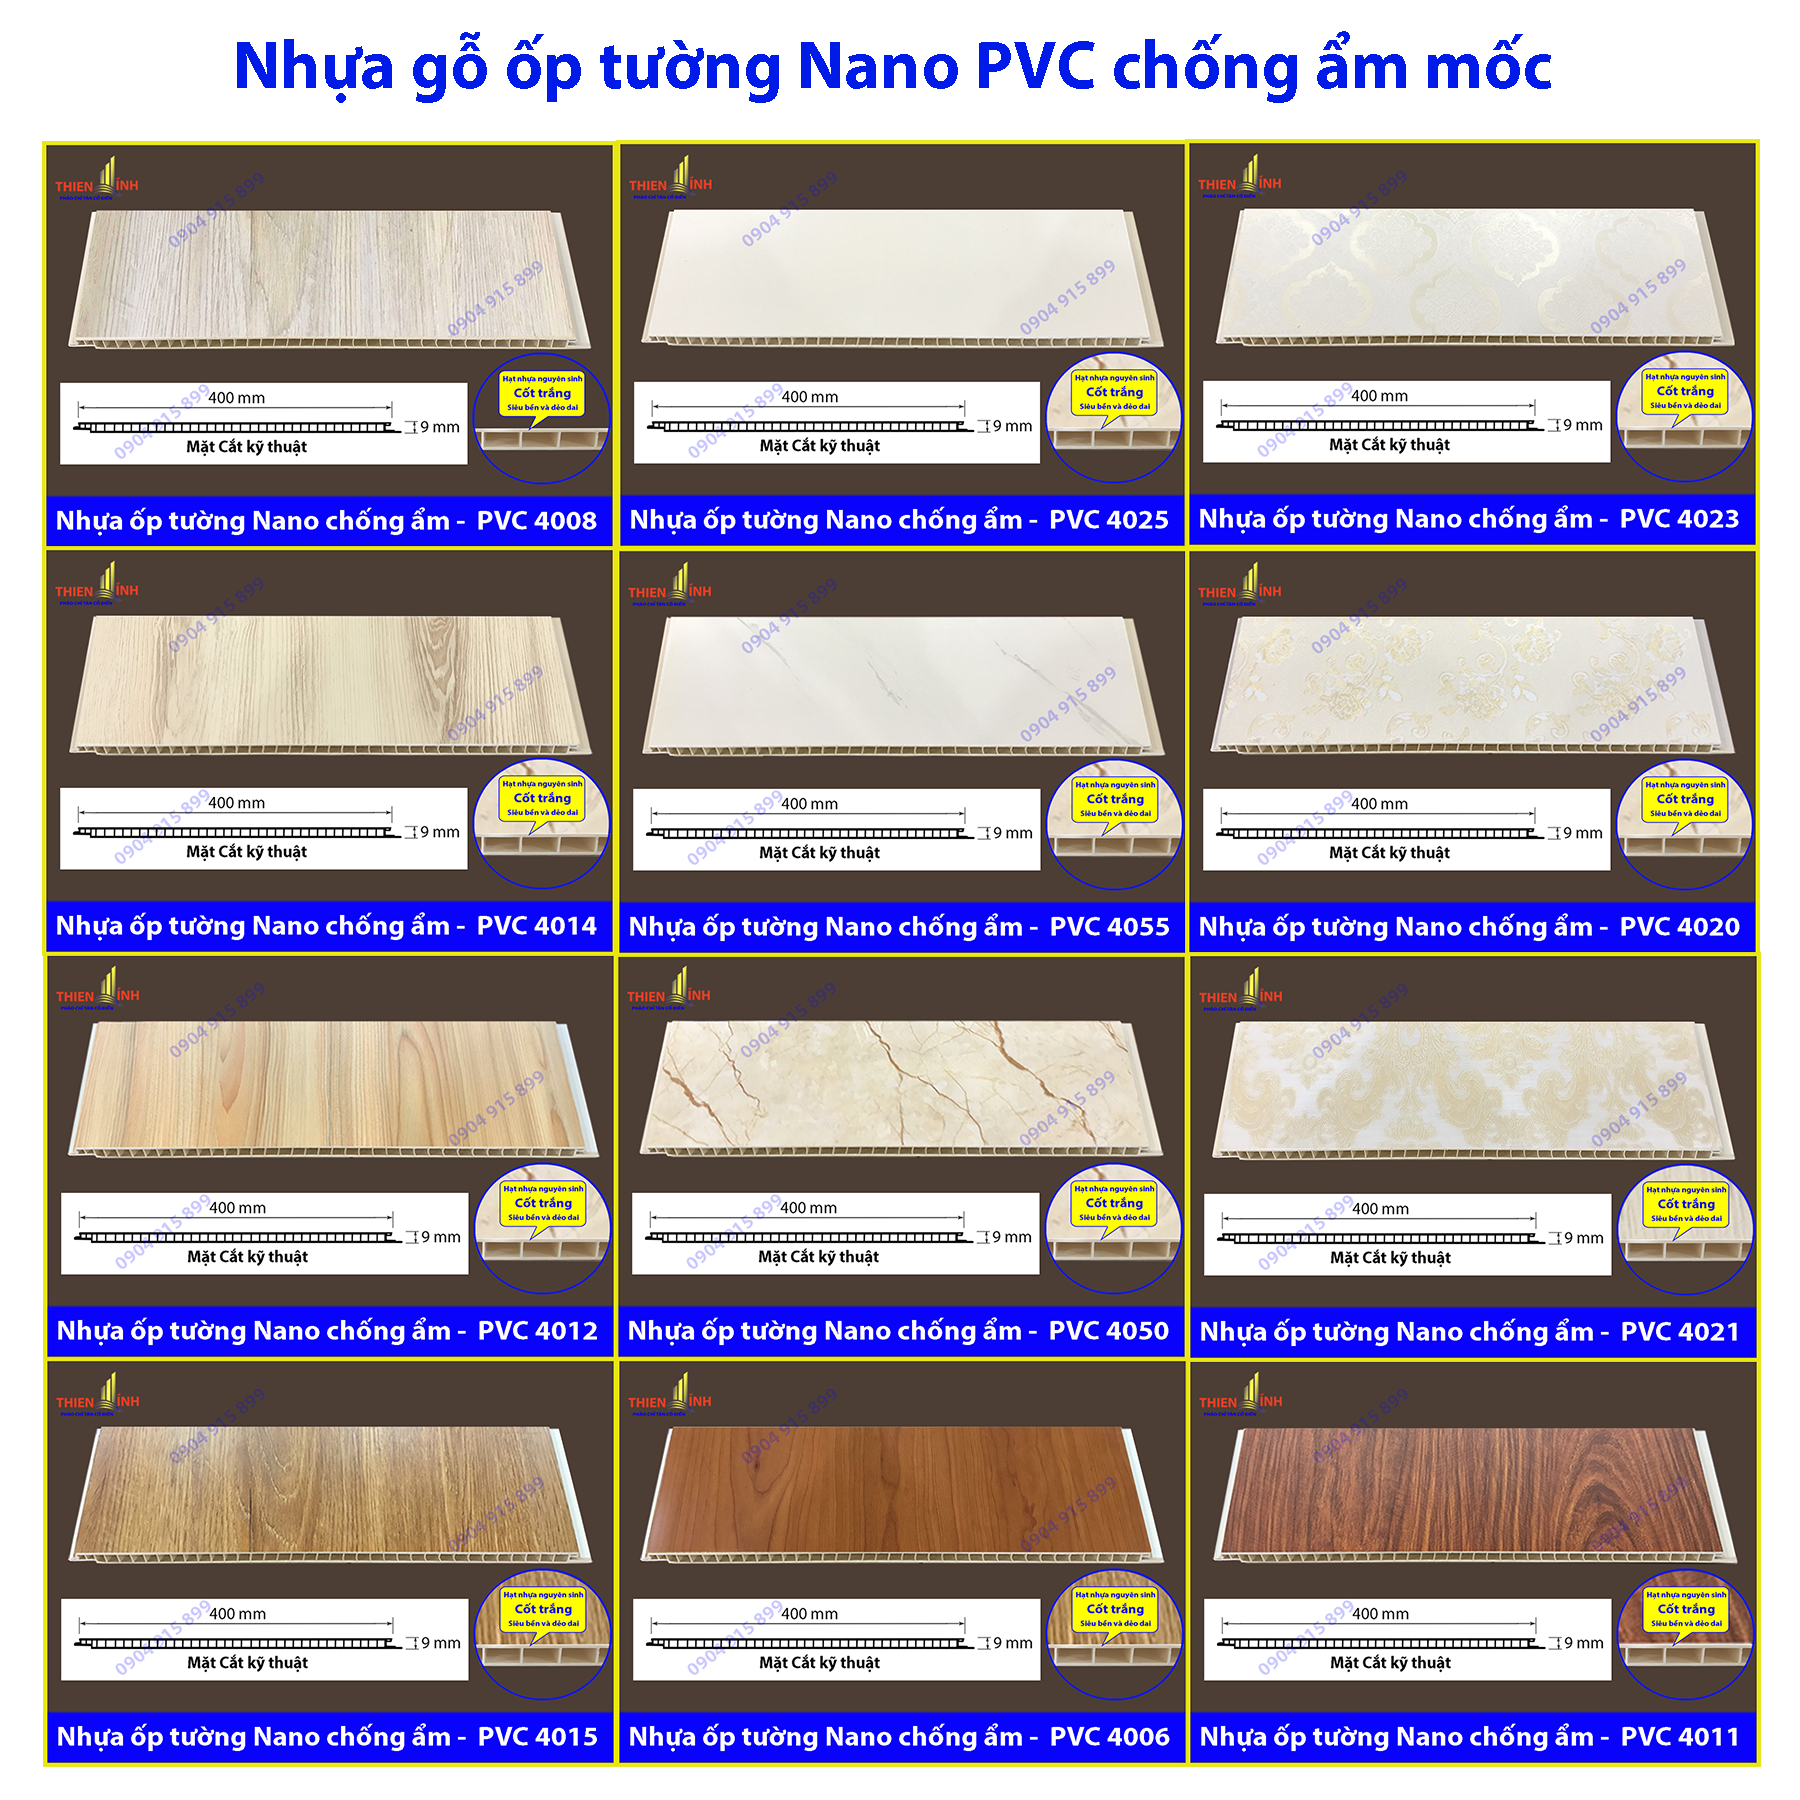 Nhựa gỗ Nano PVC chống ẩm mốc - Khắc tinh của tường cũ ẩm ướt ...